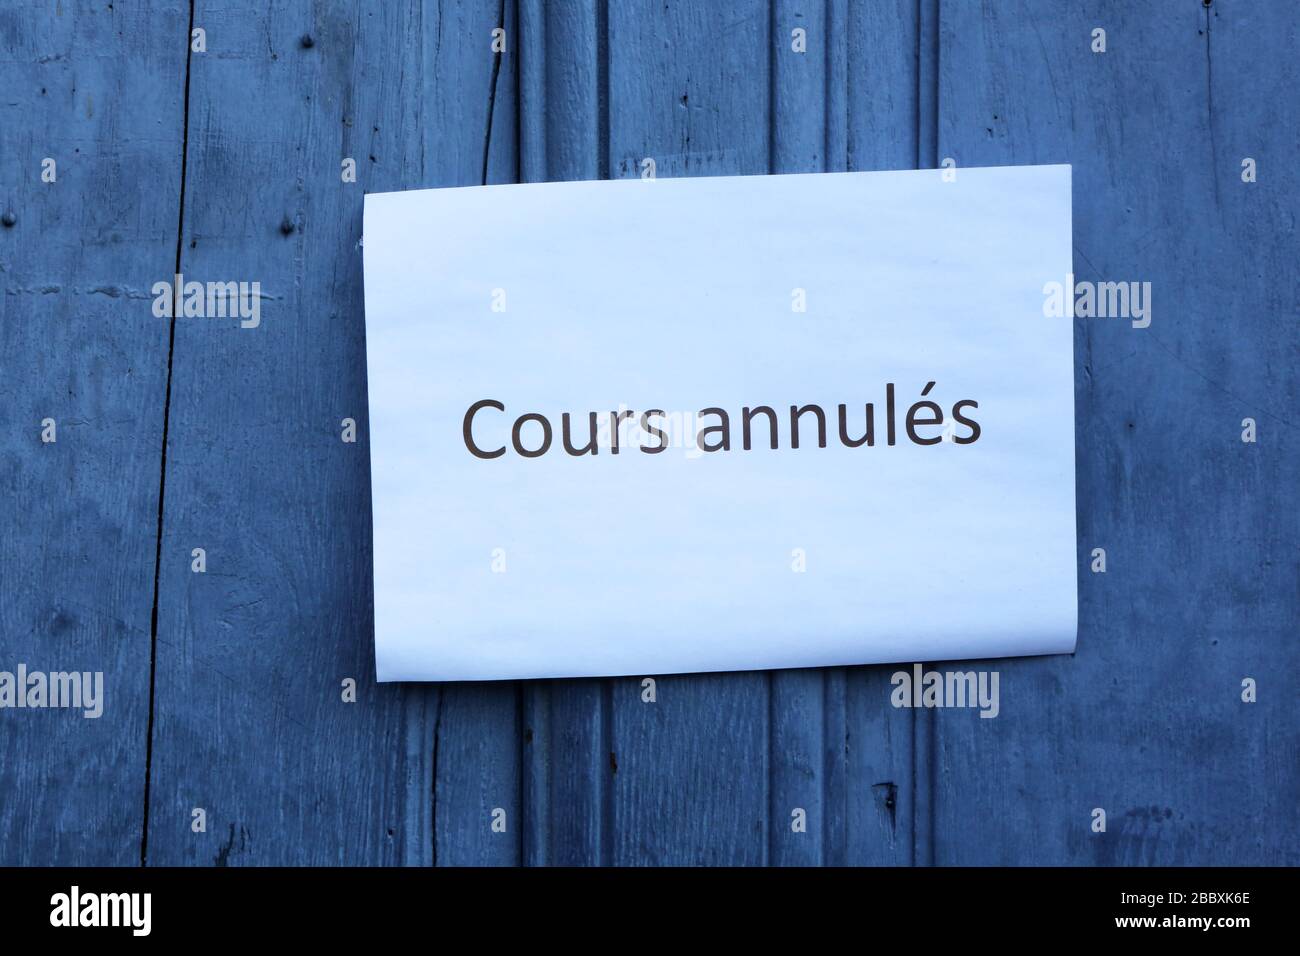 Cours annulés. Fermeture administrative. Coronavirus. Covid-19. Saint-Gervais-les-Bains. Haute-Savoie. France. Stock Photo